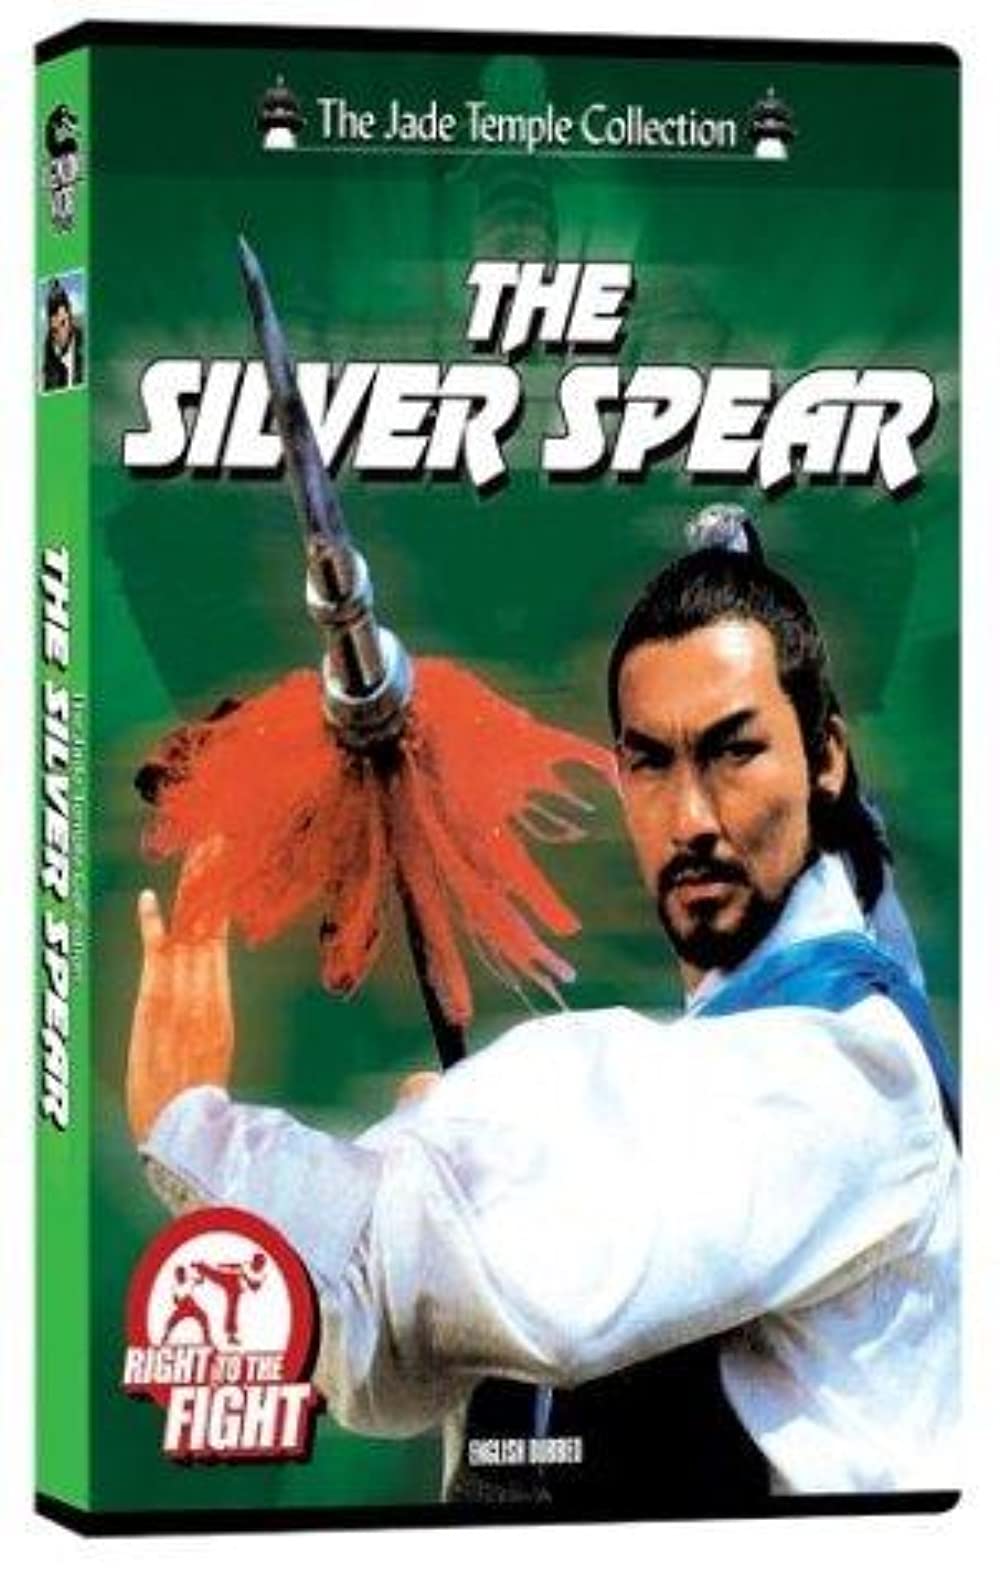 Filmbeschreibung zu Der Silberspeer der Shaolin